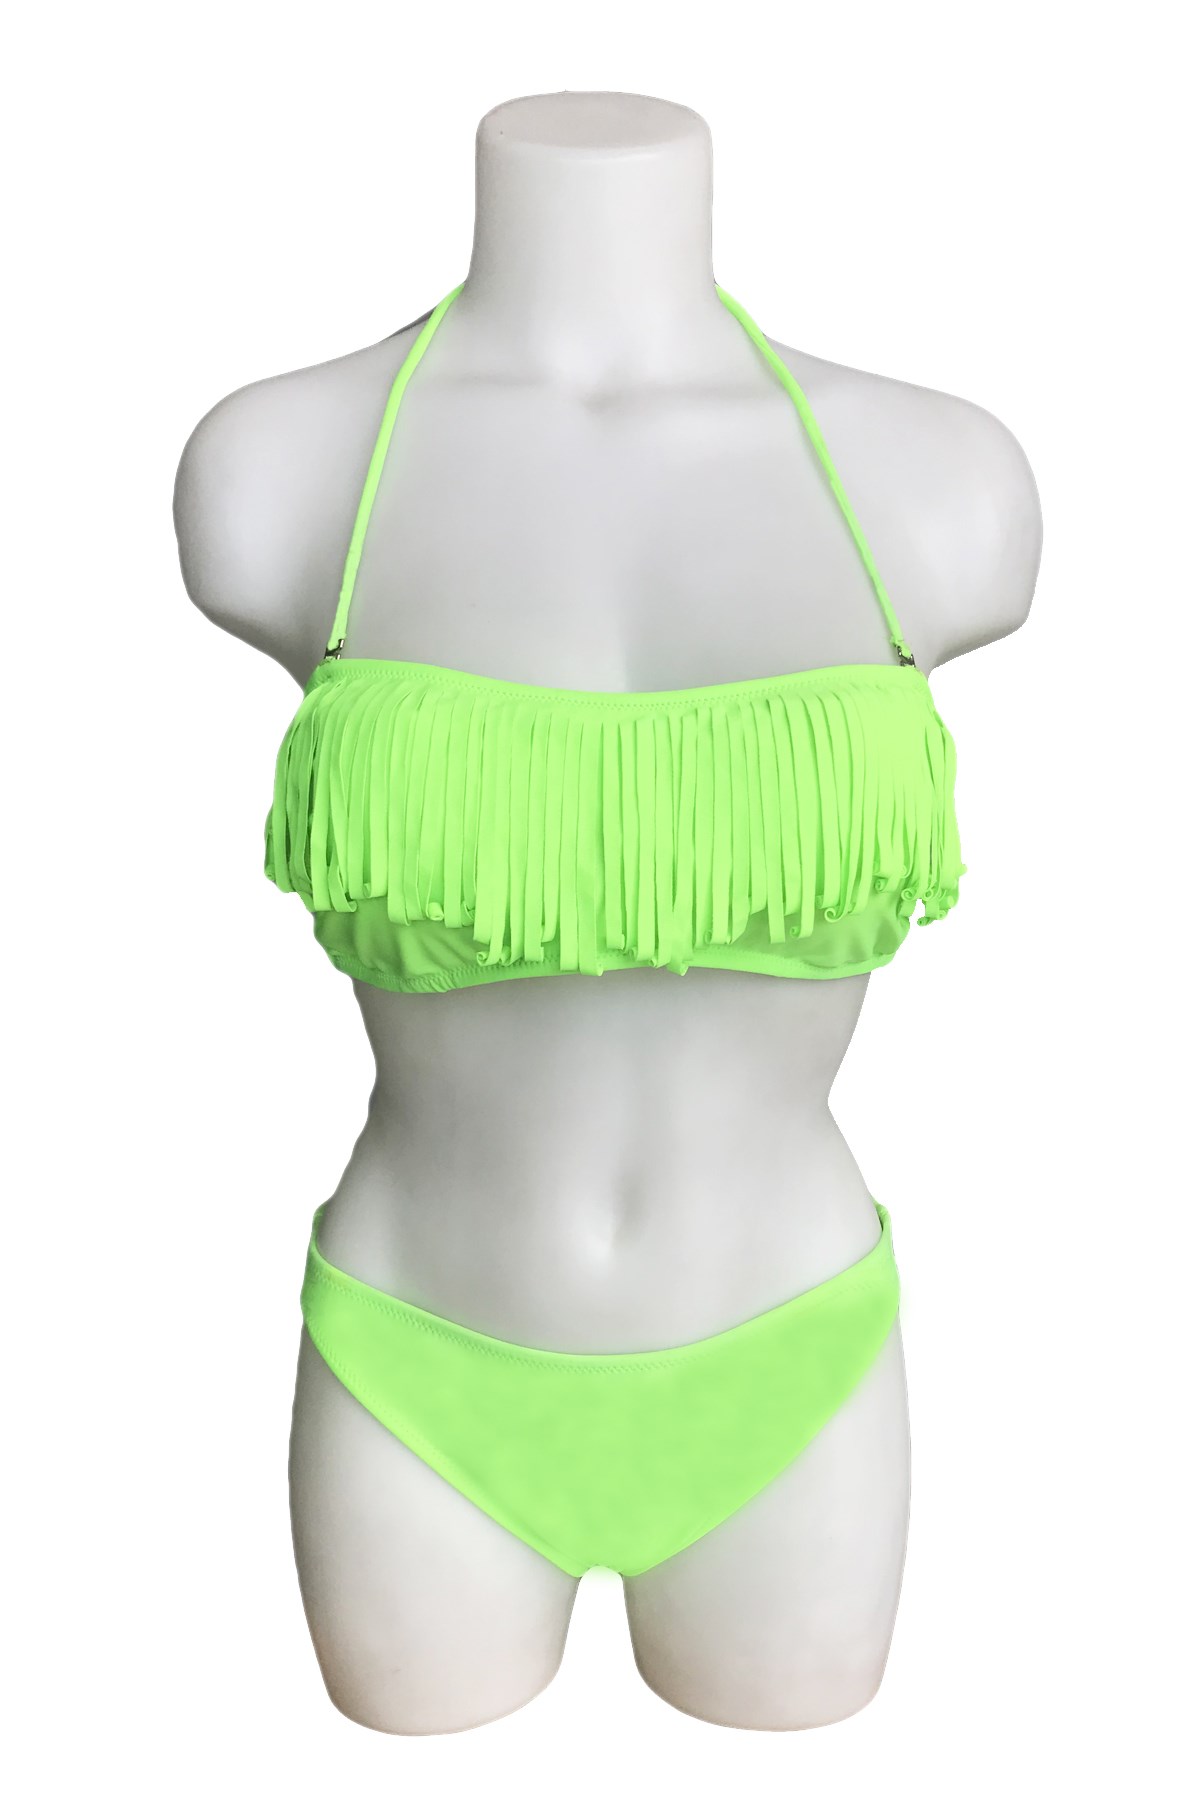 Mila Straplez Püsküllü Bikini 2505 Yeni Sezon! Moda! Ürünler Rakipsiz  Fiyatlar İç Giyim, Ev Tekstili, Kozmetik, Çeyiz ve Daha Fazlası |  yoncatoptan.com